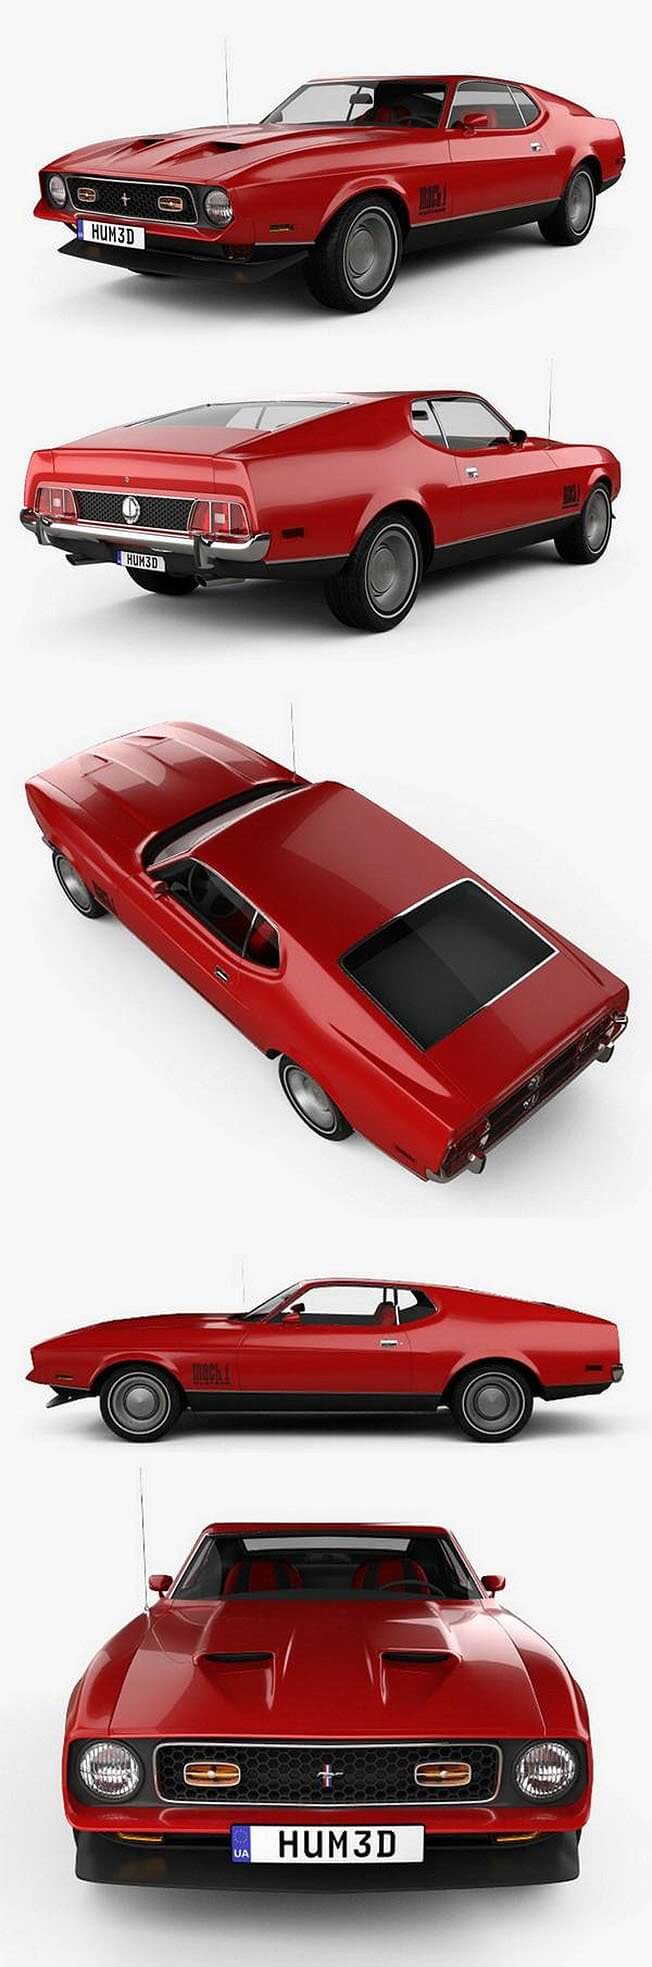 福特 Mustang Mach 1 1971 James Bond 经典复古跑车3D模型下载 (C4D,FBX,OBJ,MAX)